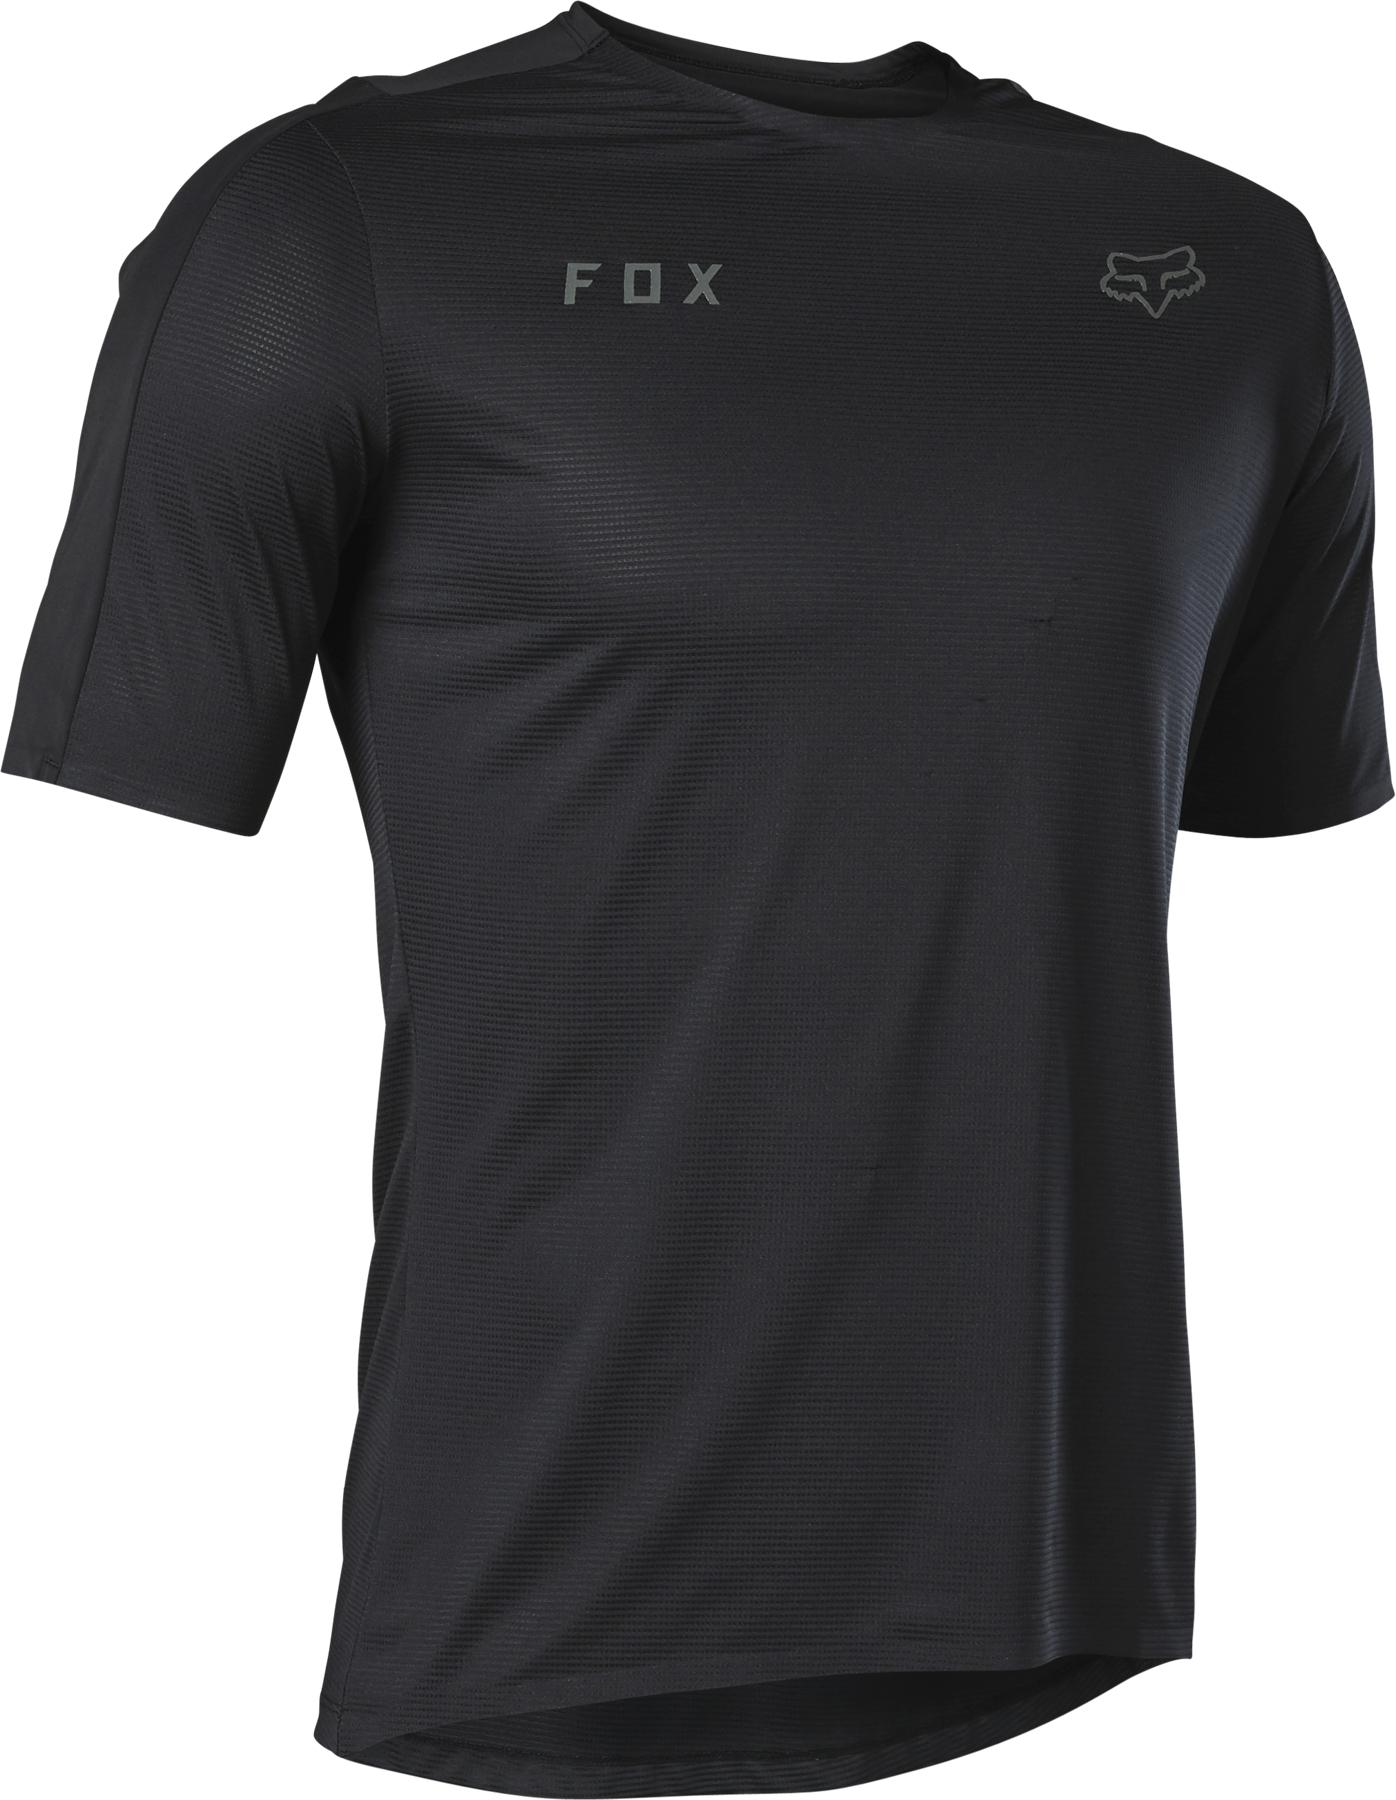 Fox Racing Flexair Ascent Short Sleeve Jersey - Black